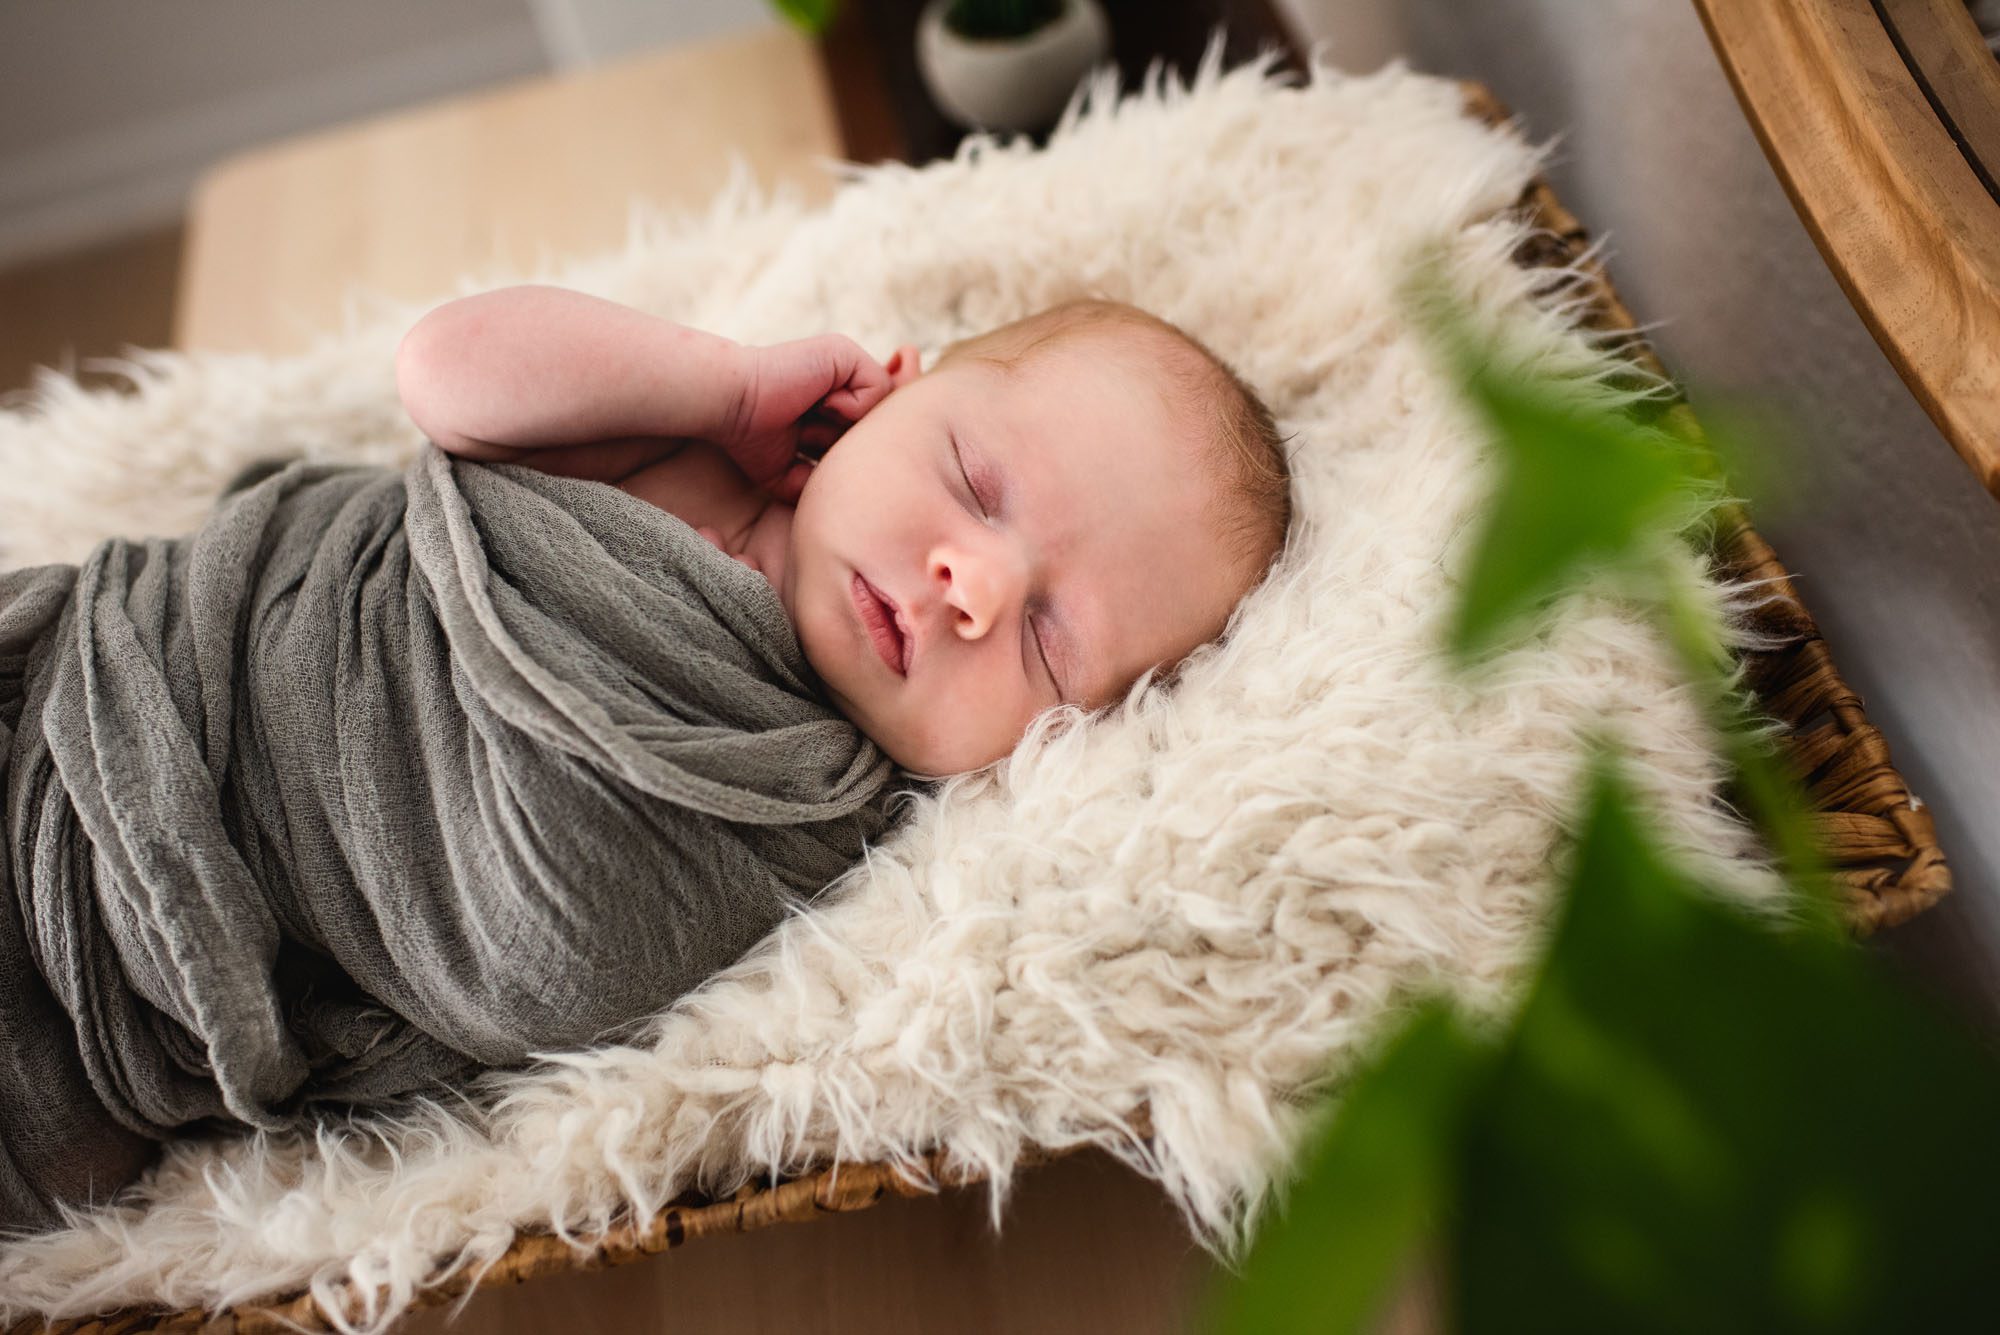 San Antonio Newborn Photographer, Newborn baby asleep in basket